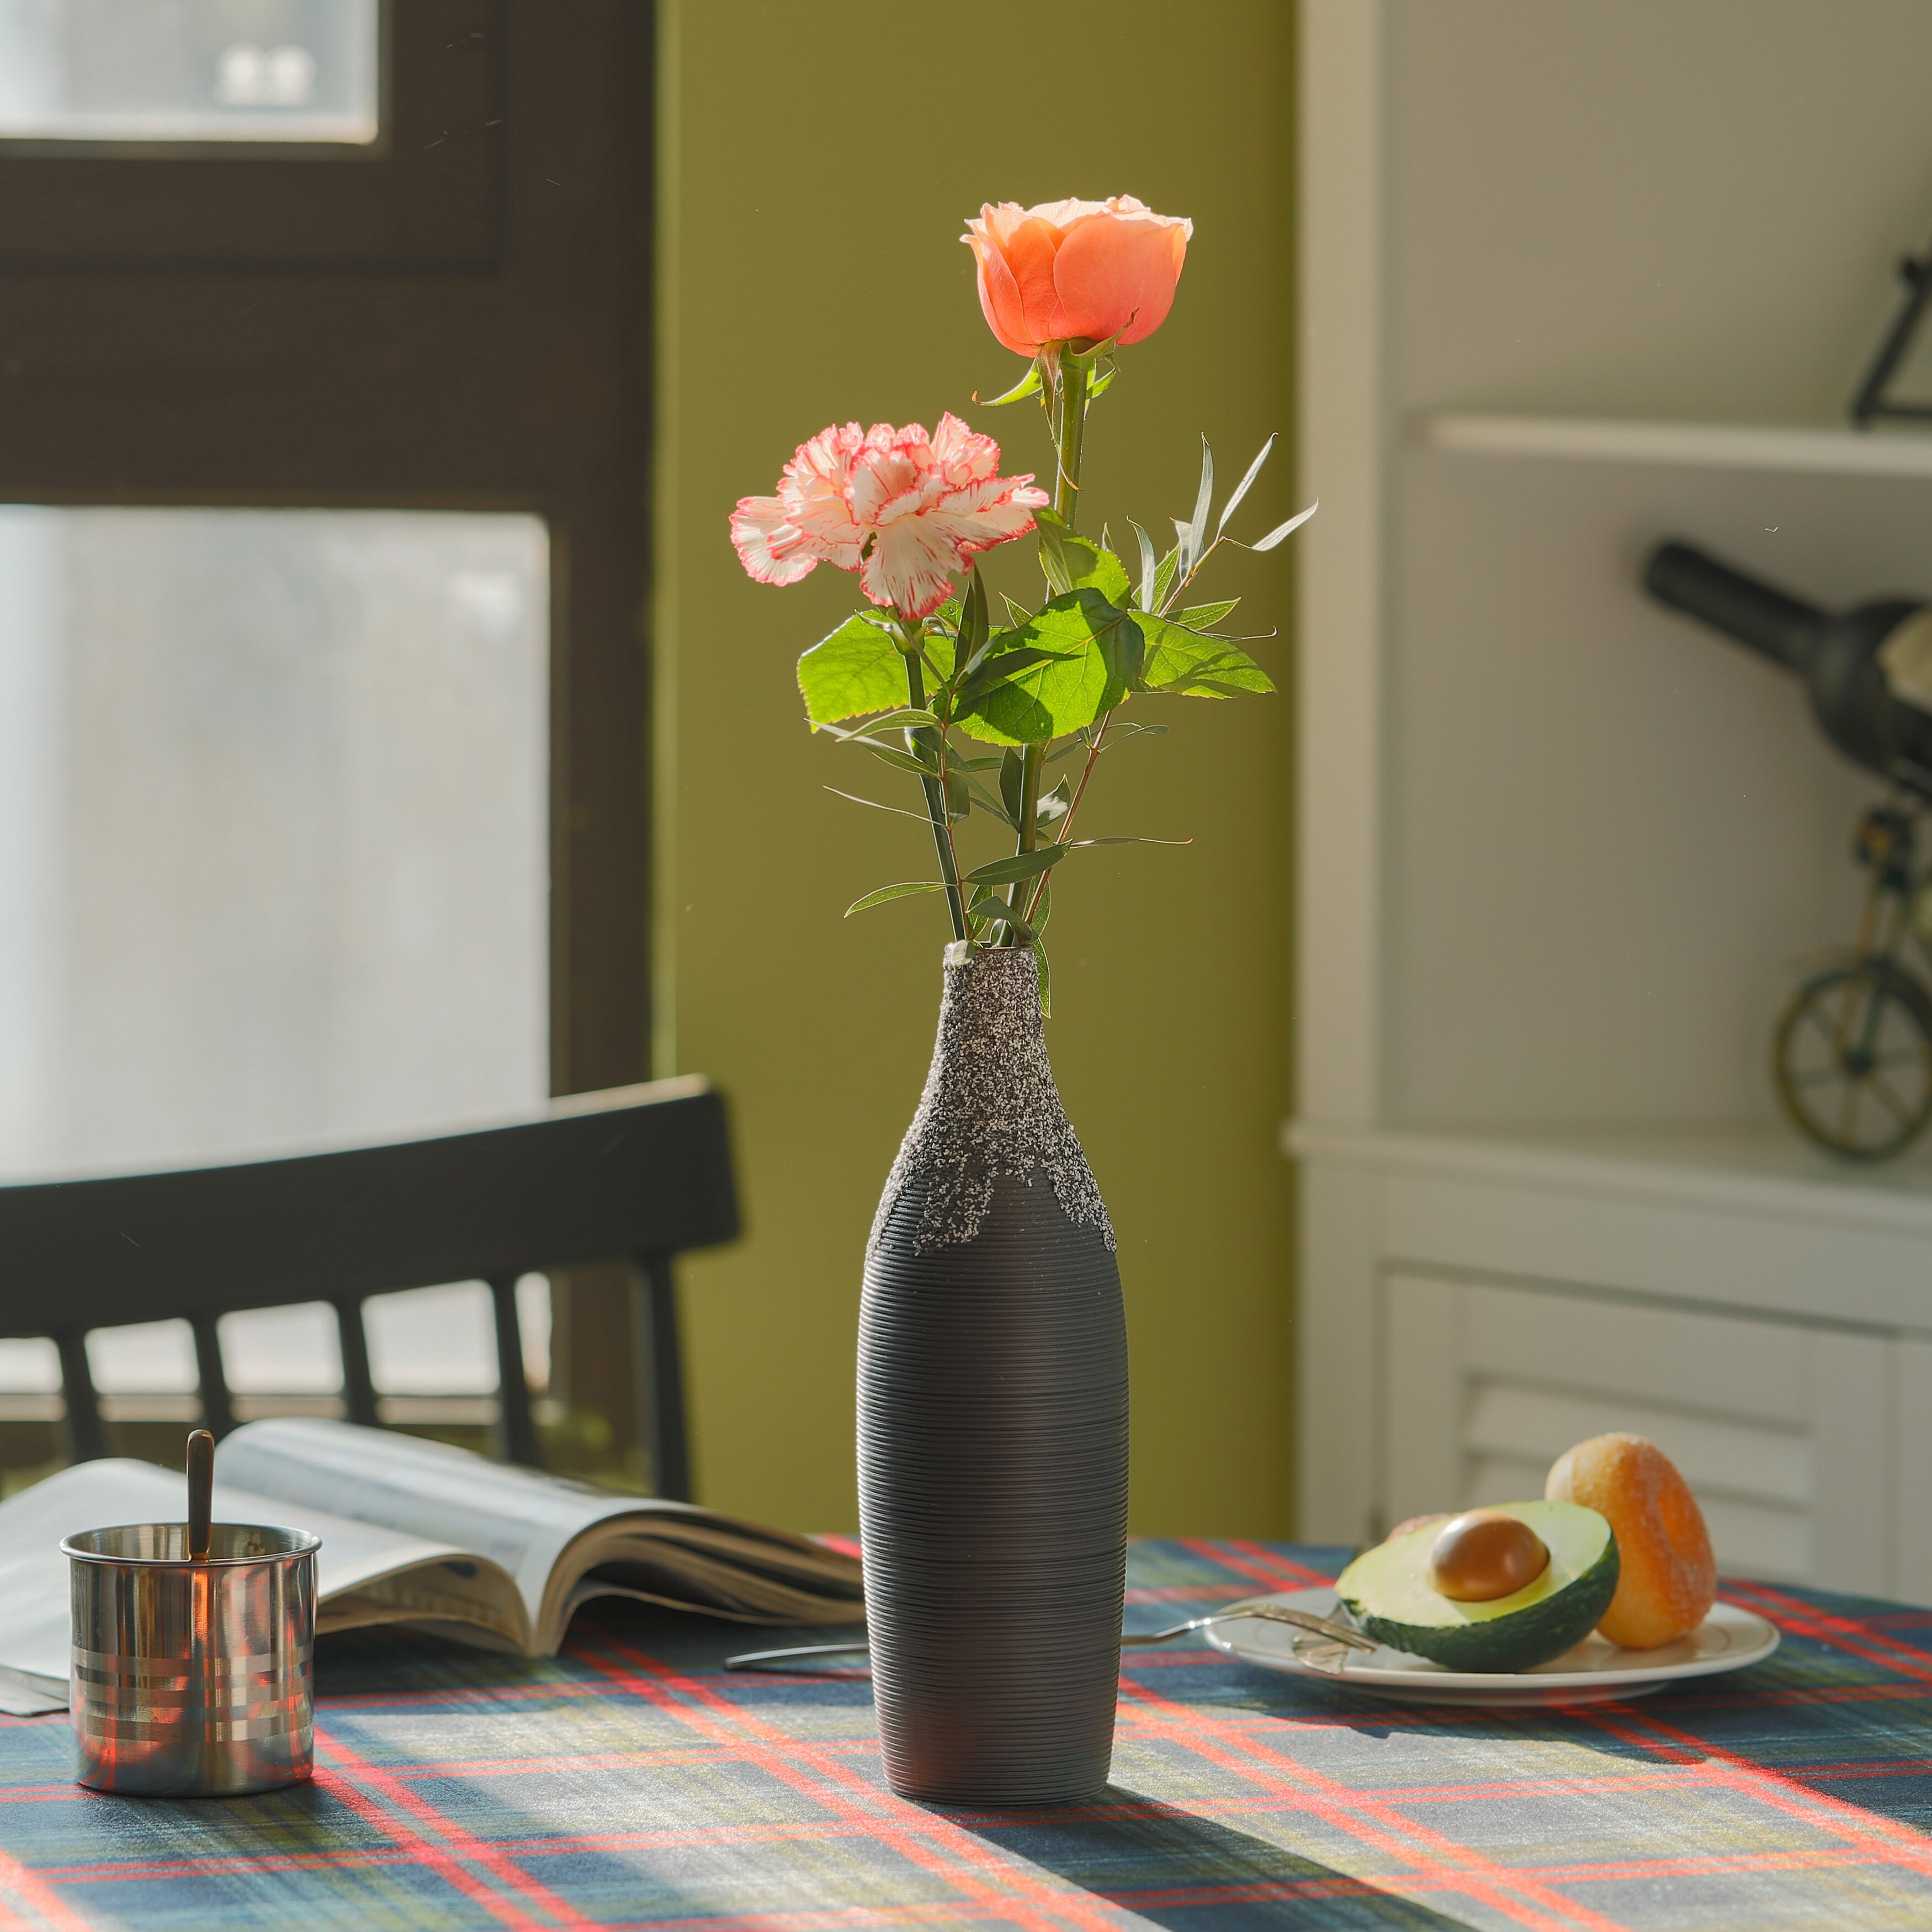 Modern Decorative Ceramic Table Vase Ripped Design Bottle Shape Flower Holder